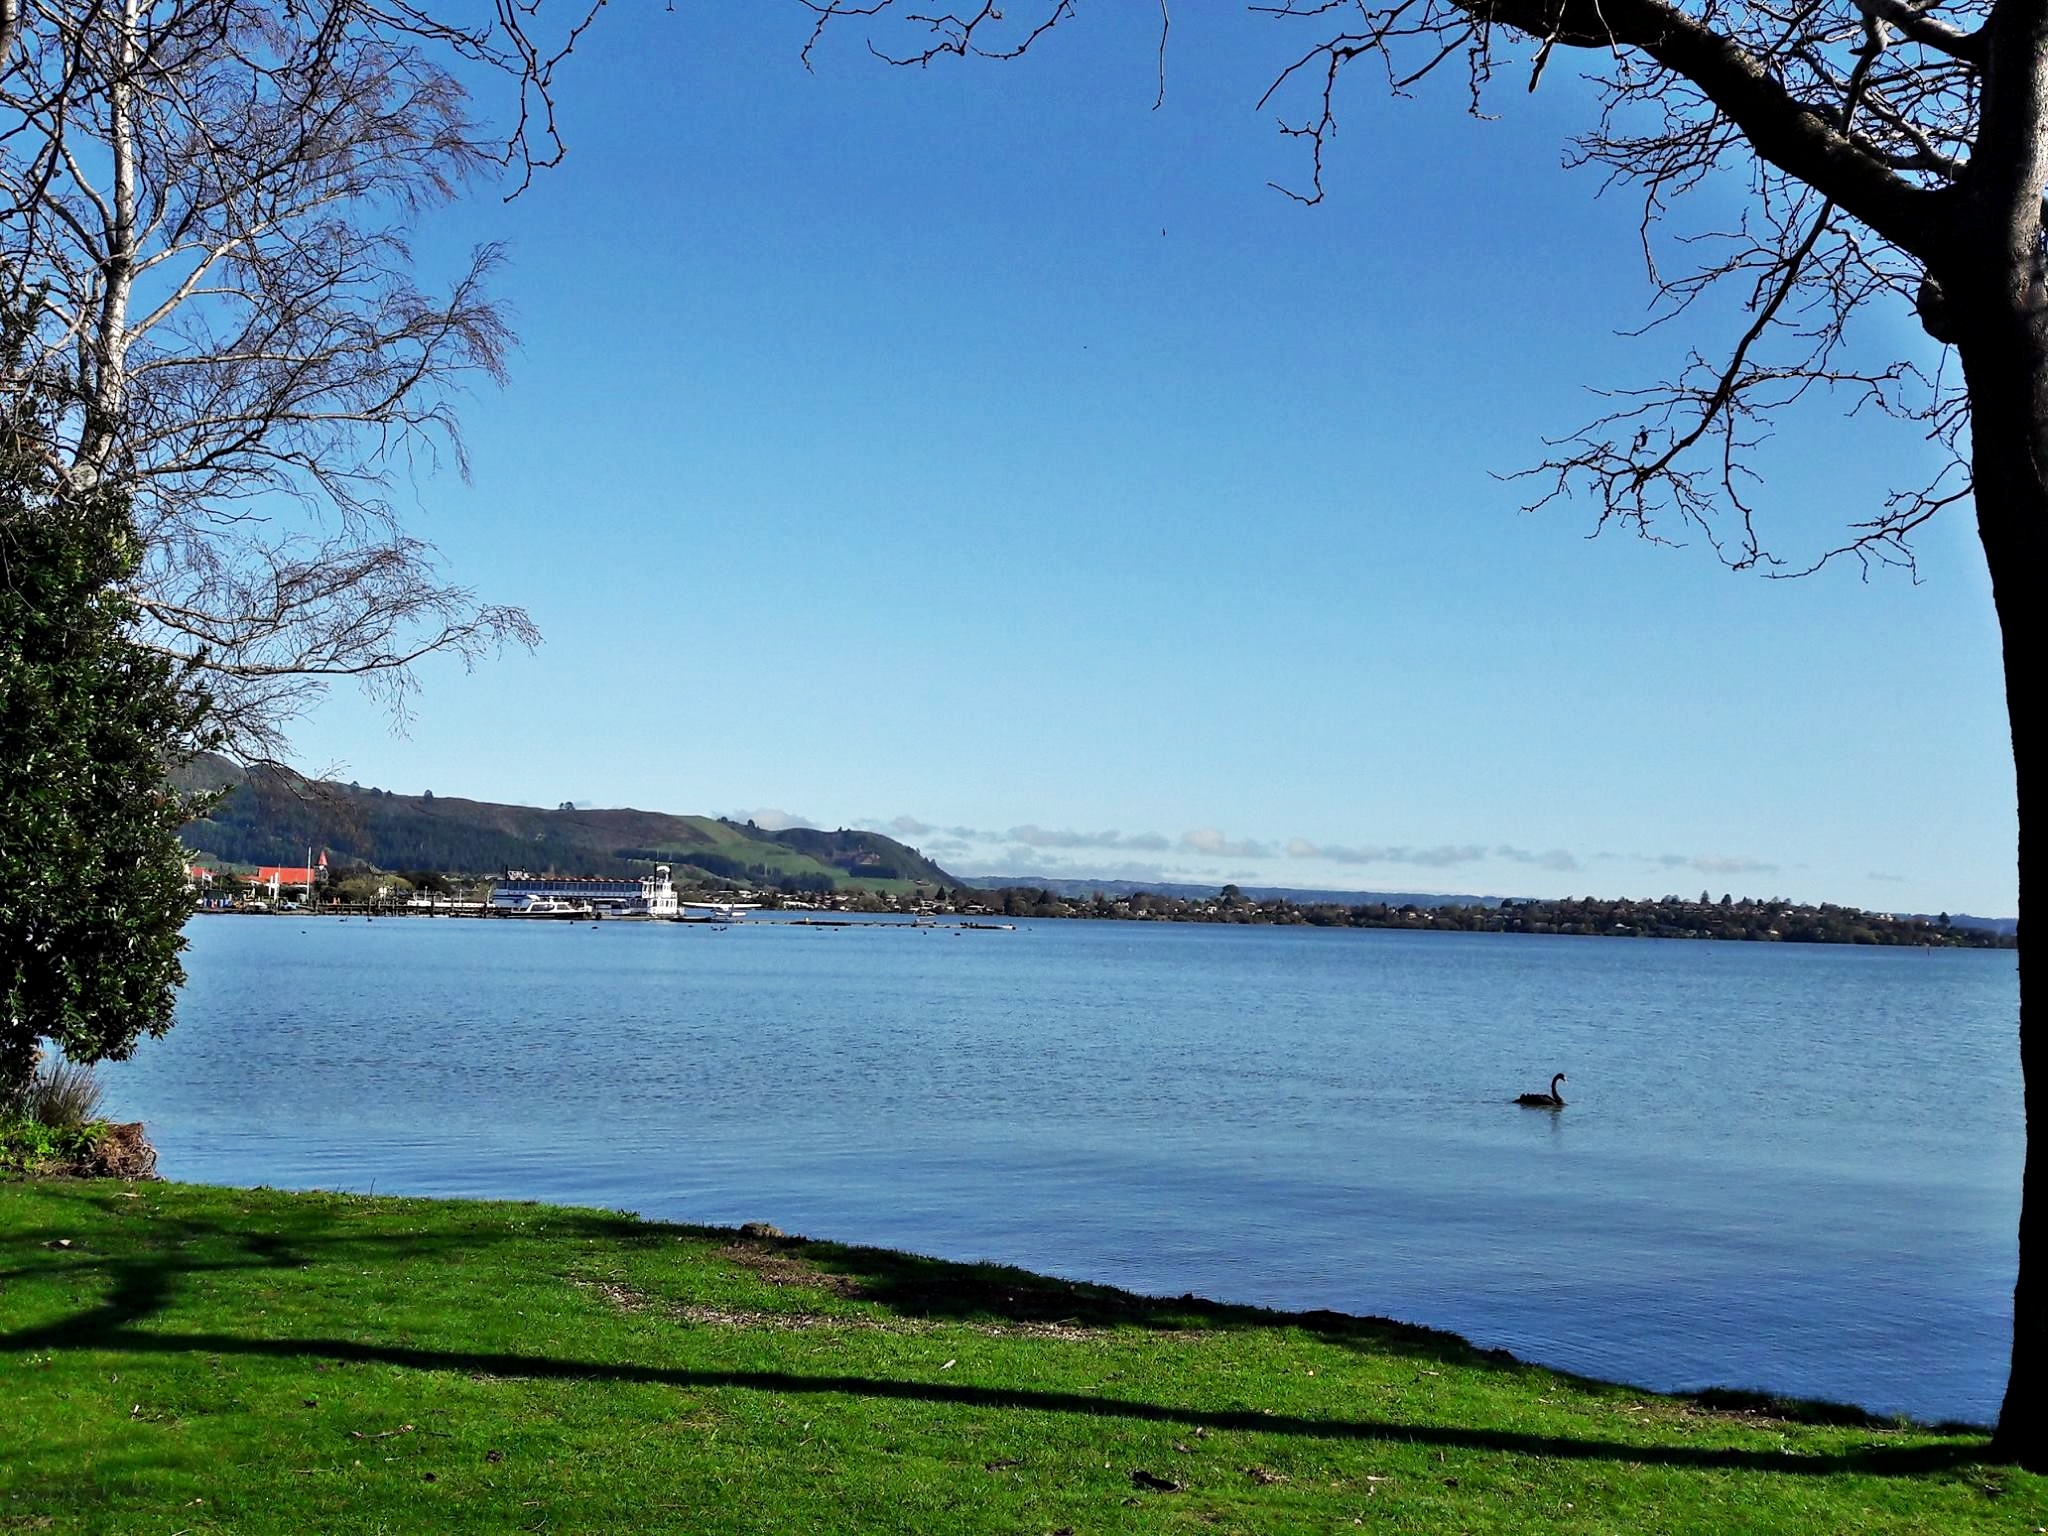 A morning view of the beautiful Rotorua lake